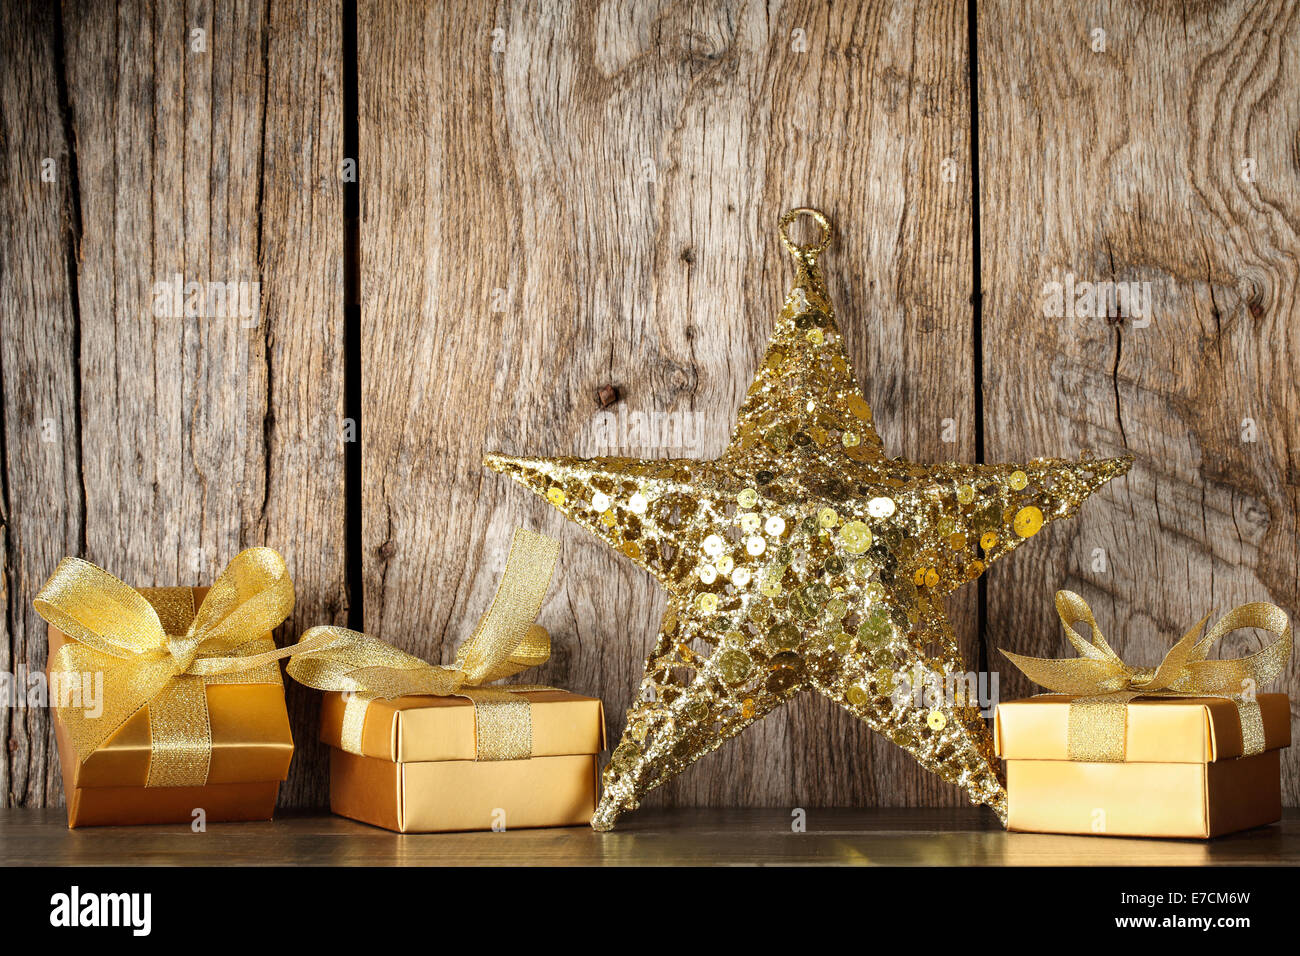 Boîtes cadeaux et étoile d'or sur bois grunge background Banque D'Images